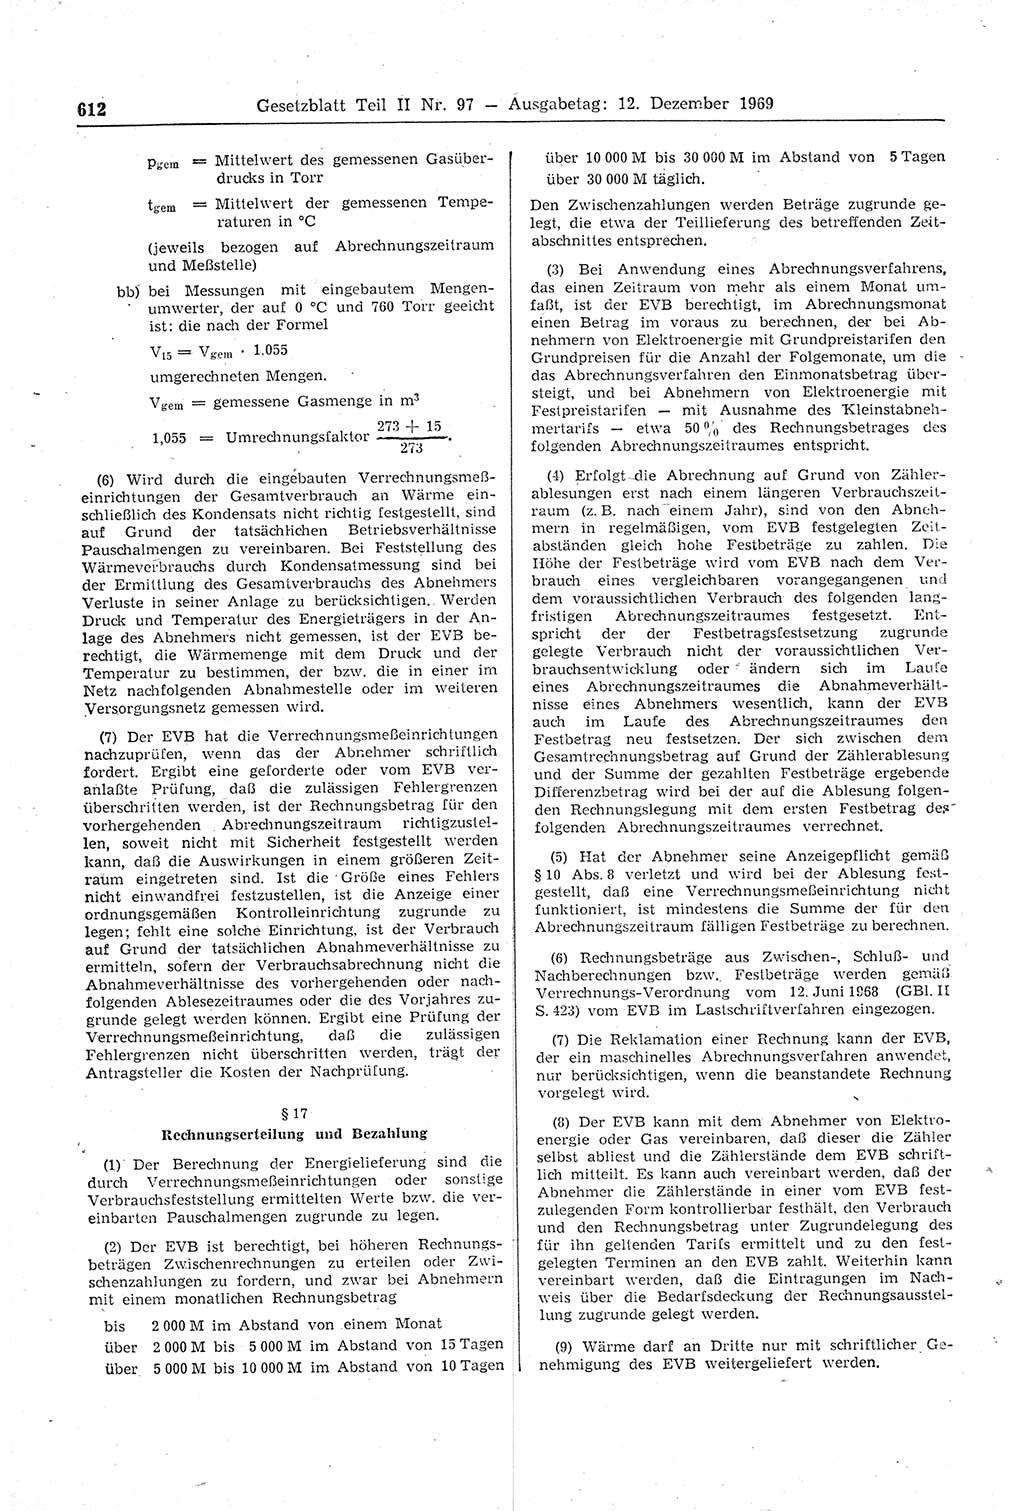 Gesetzblatt (GBl.) der Deutschen Demokratischen Republik (DDR) Teil ⅠⅠ 1969, Seite 612 (GBl. DDR ⅠⅠ 1969, S. 612)